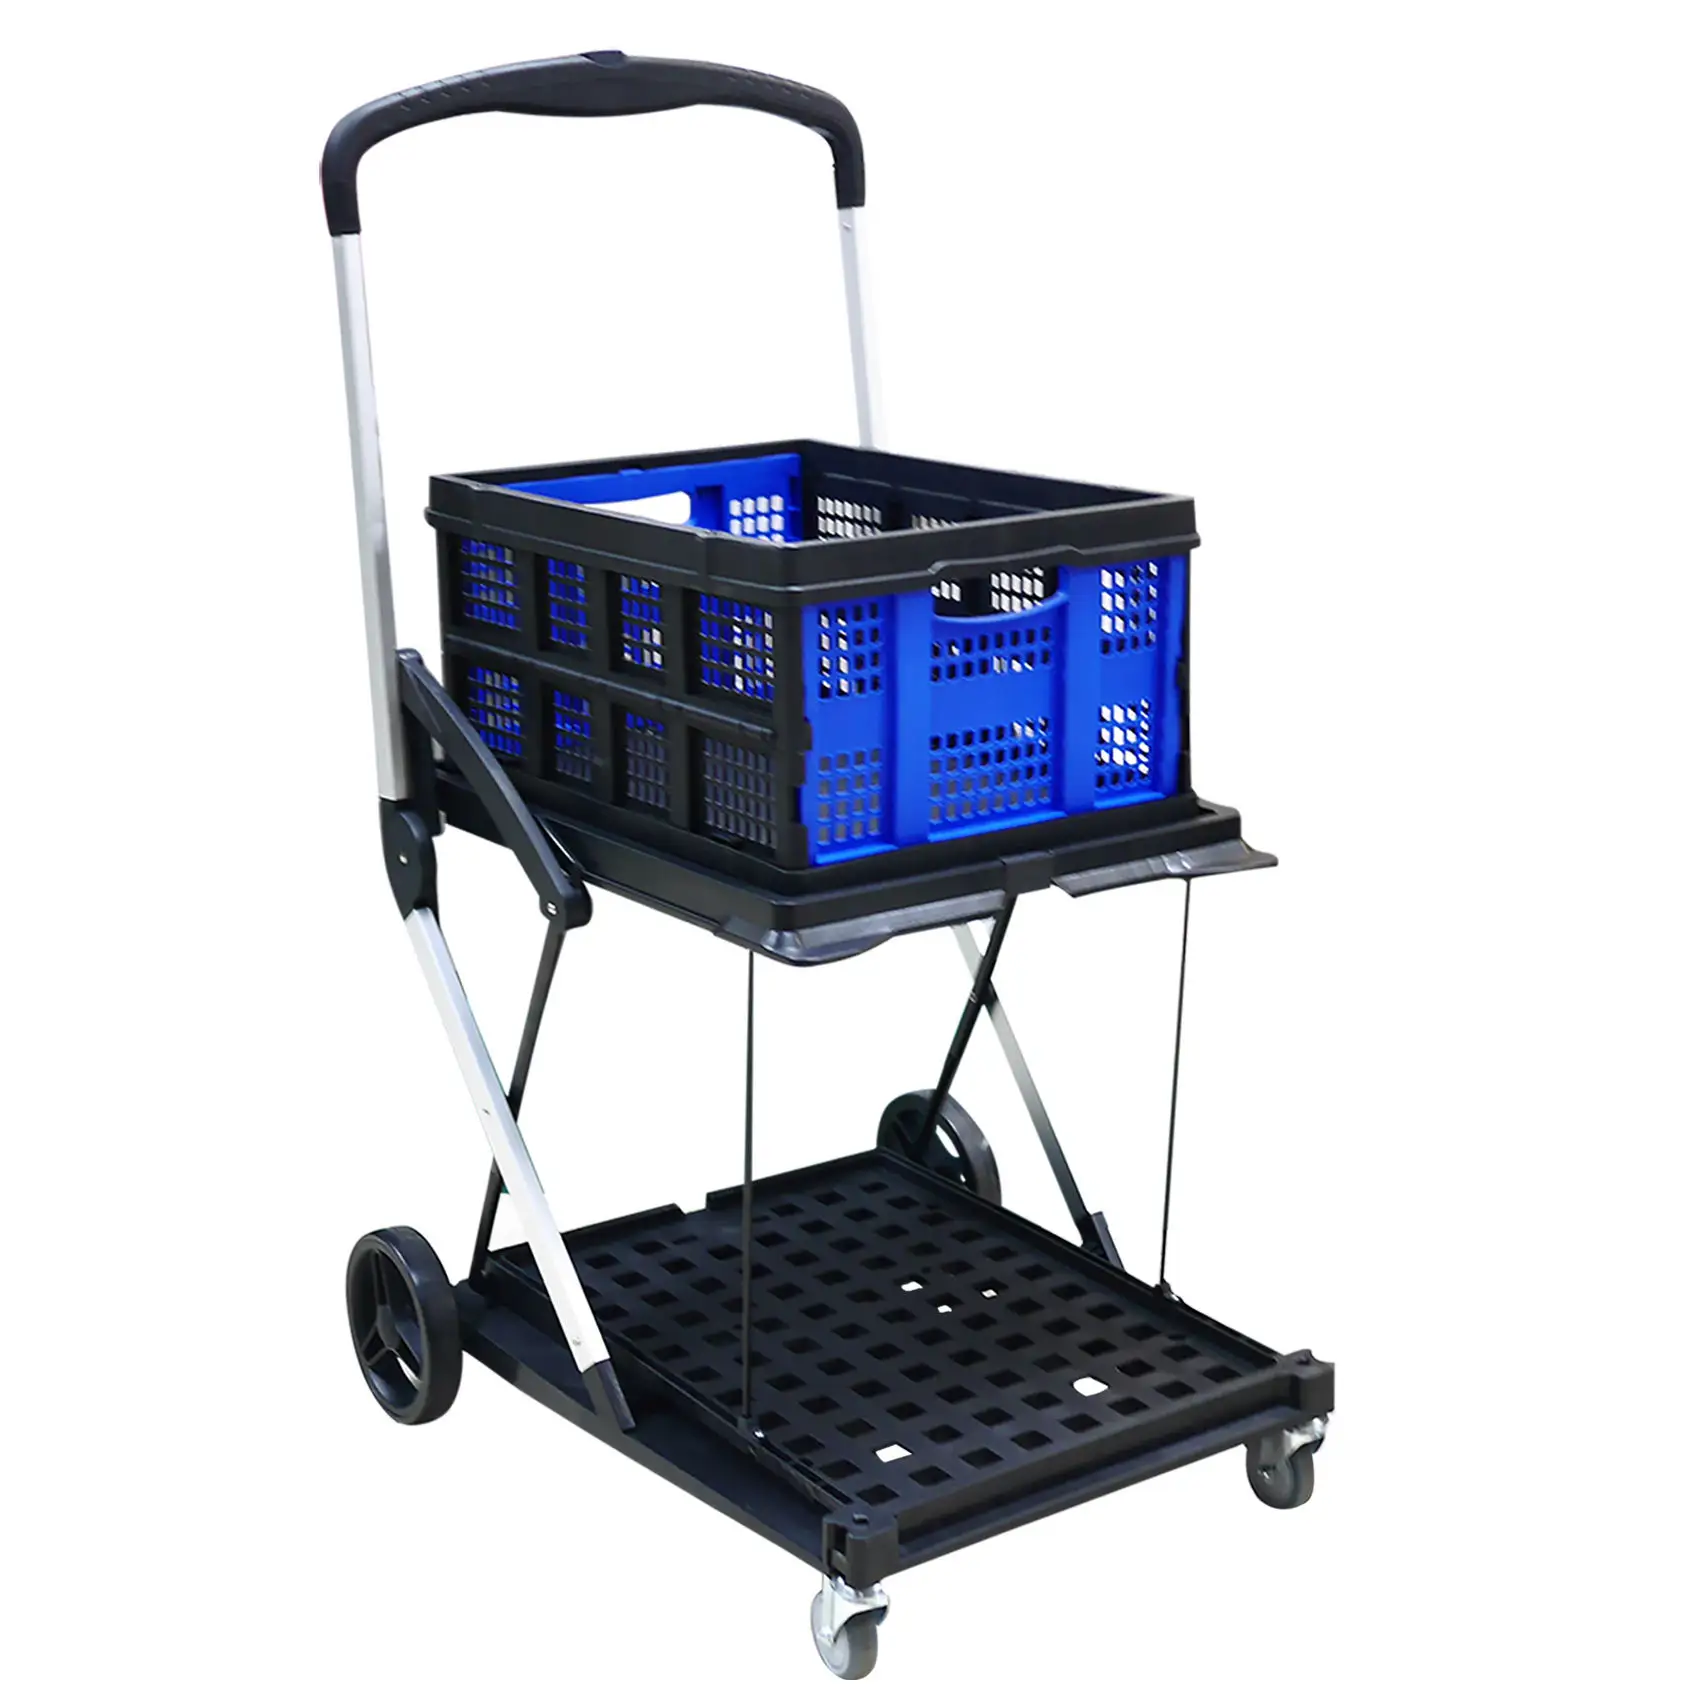 Çok kullanımlı 2 katmanlı katlanır 198 lbs kapasite katlanabilir yardımcı programı depolama el arabası bakkal bagaj hareketli ofis kullanımı için tekerlekler ile